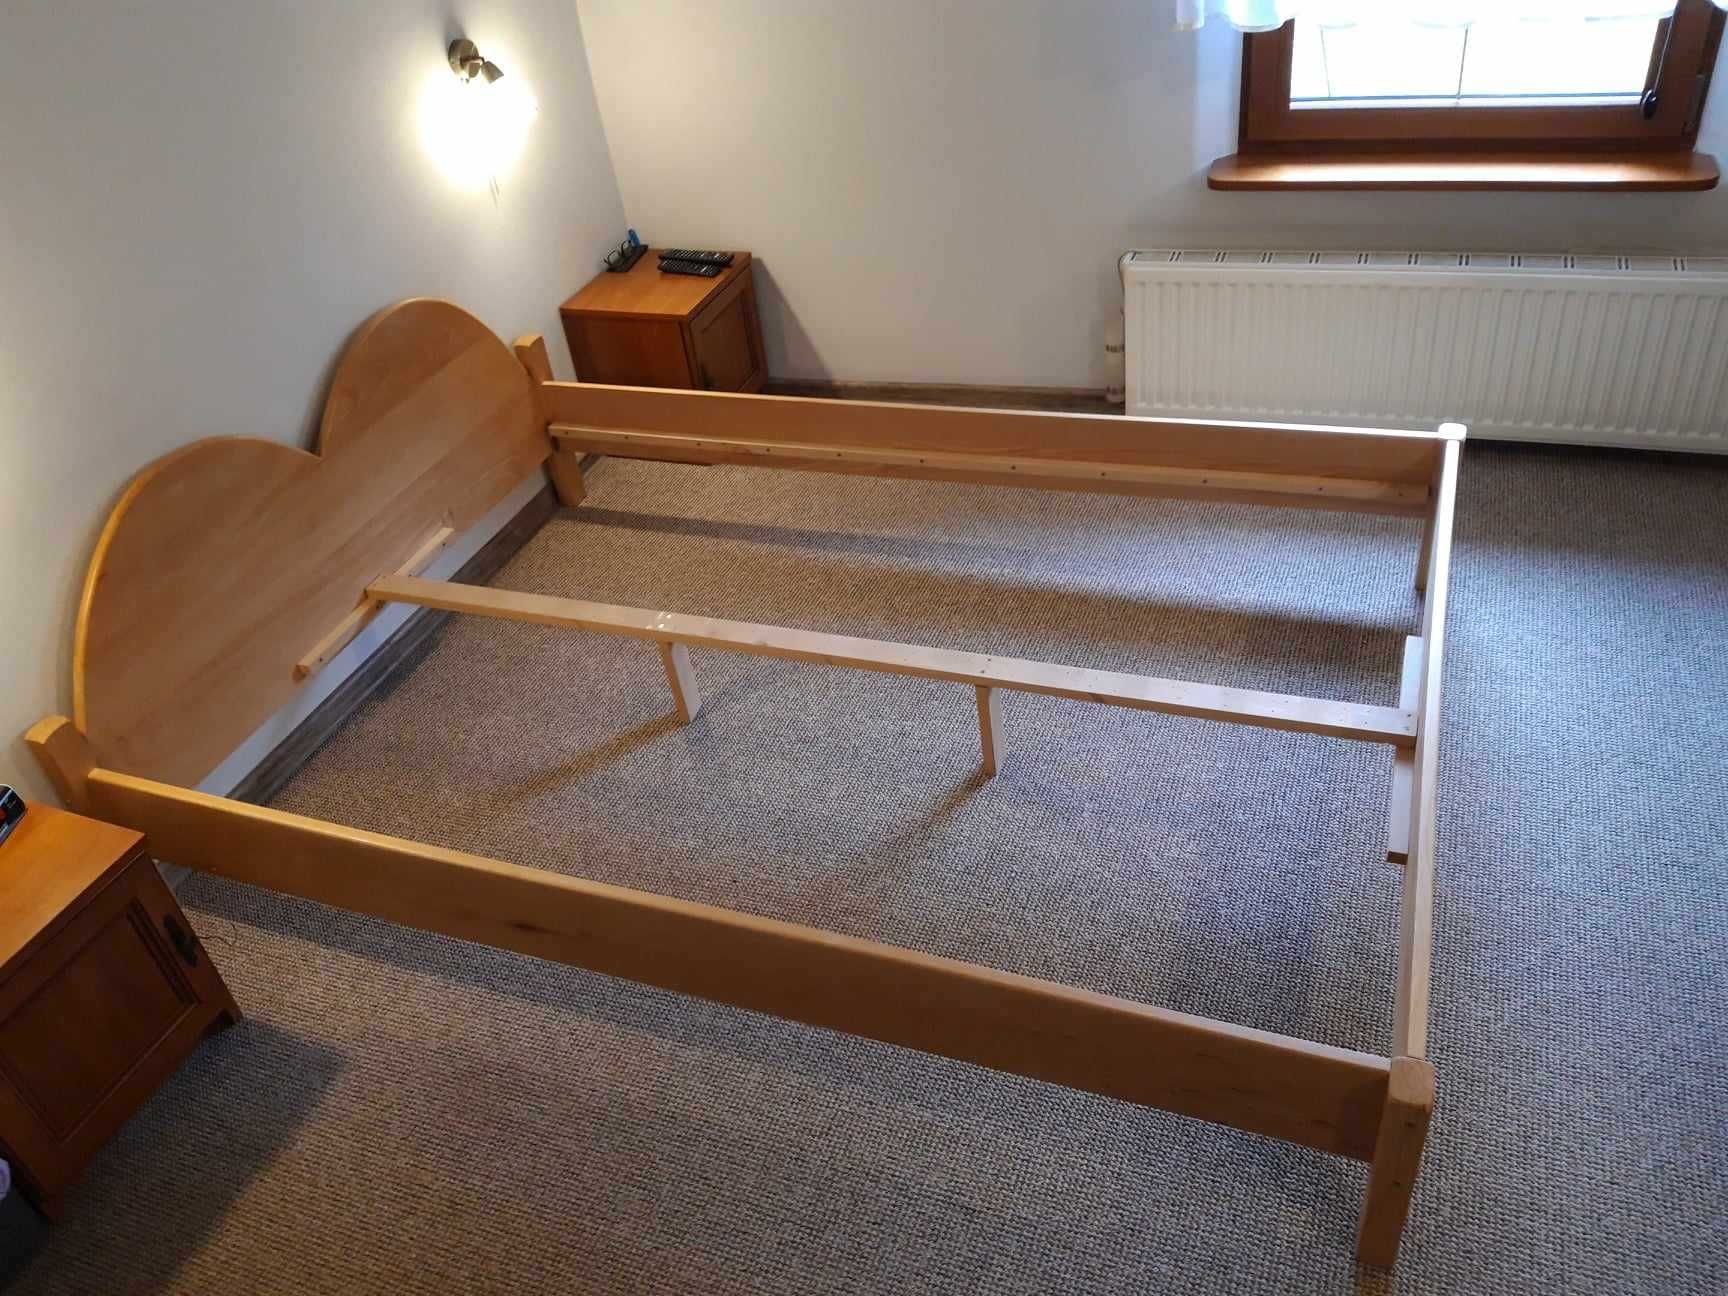 Łóżko drewniane bukowe 140x200